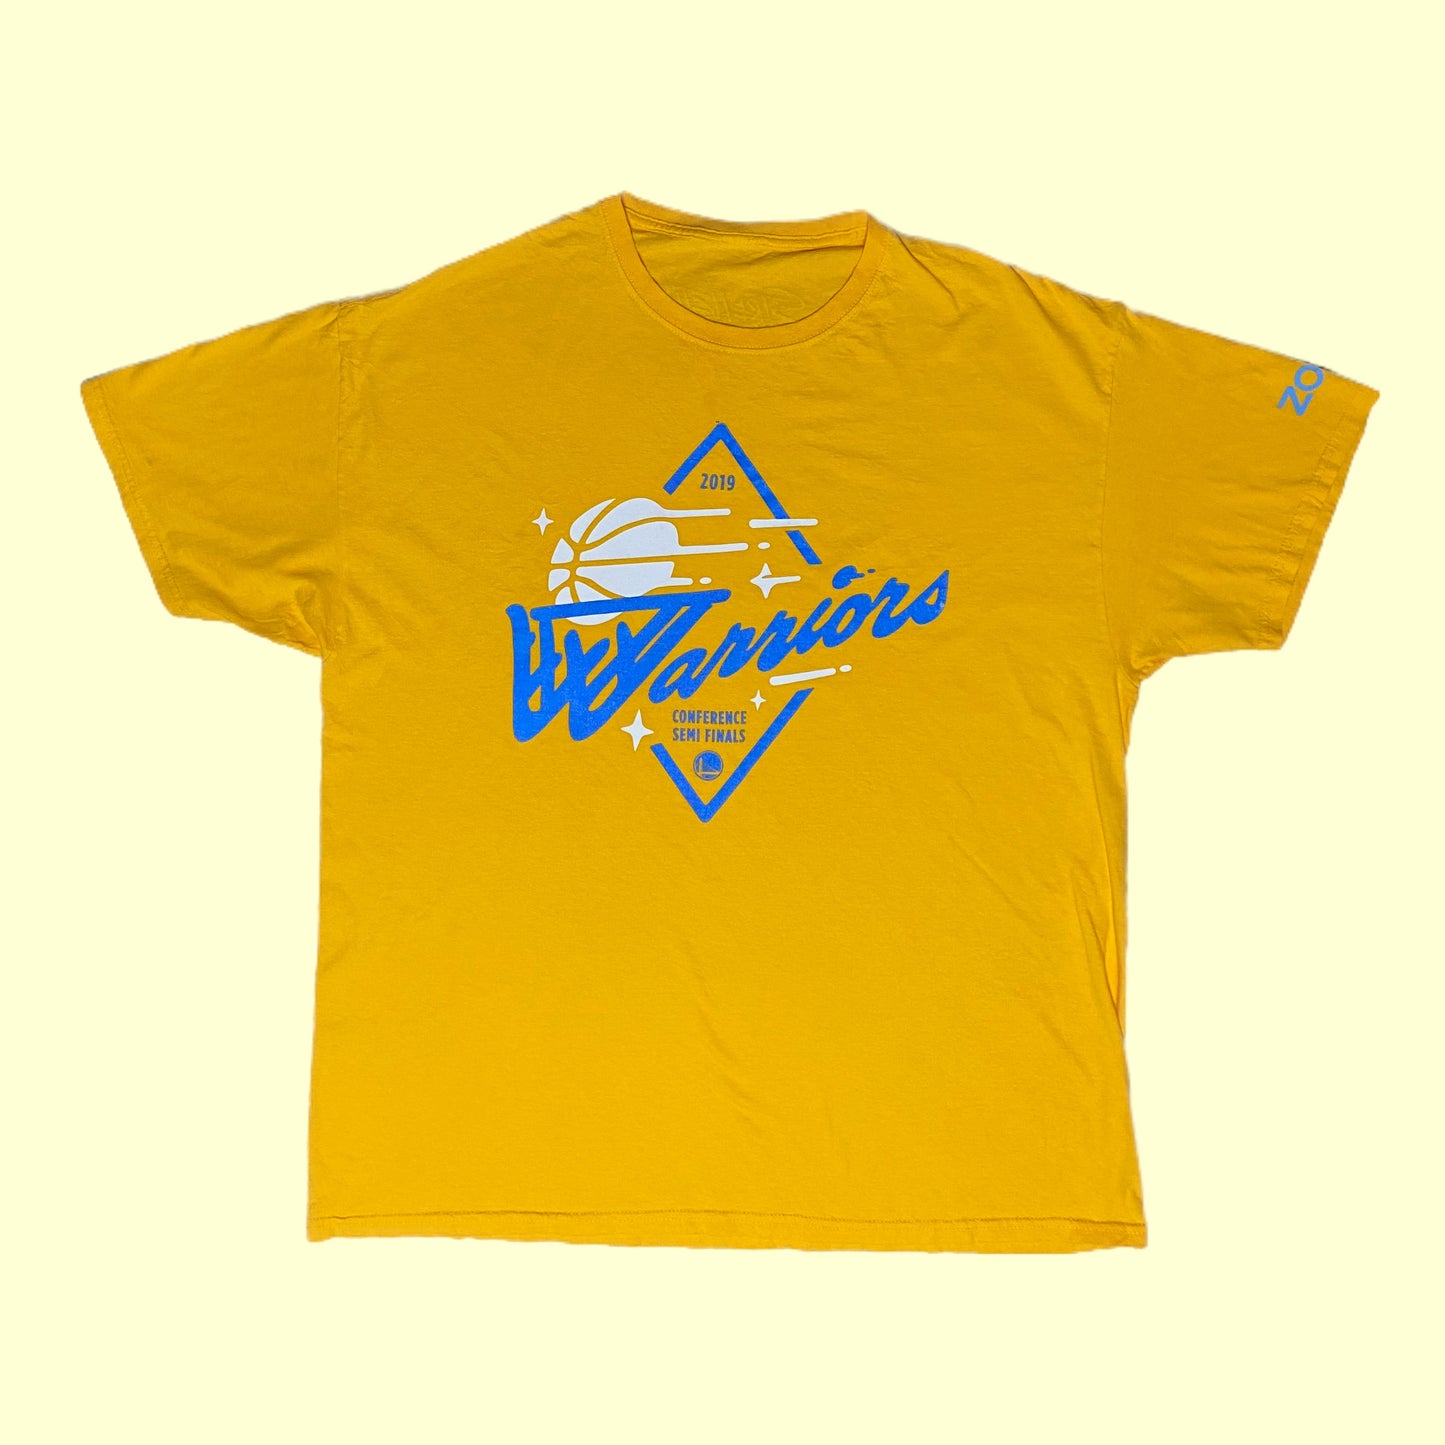 Golden State Warriors 2019 Conference Finals T-Shirt - XL